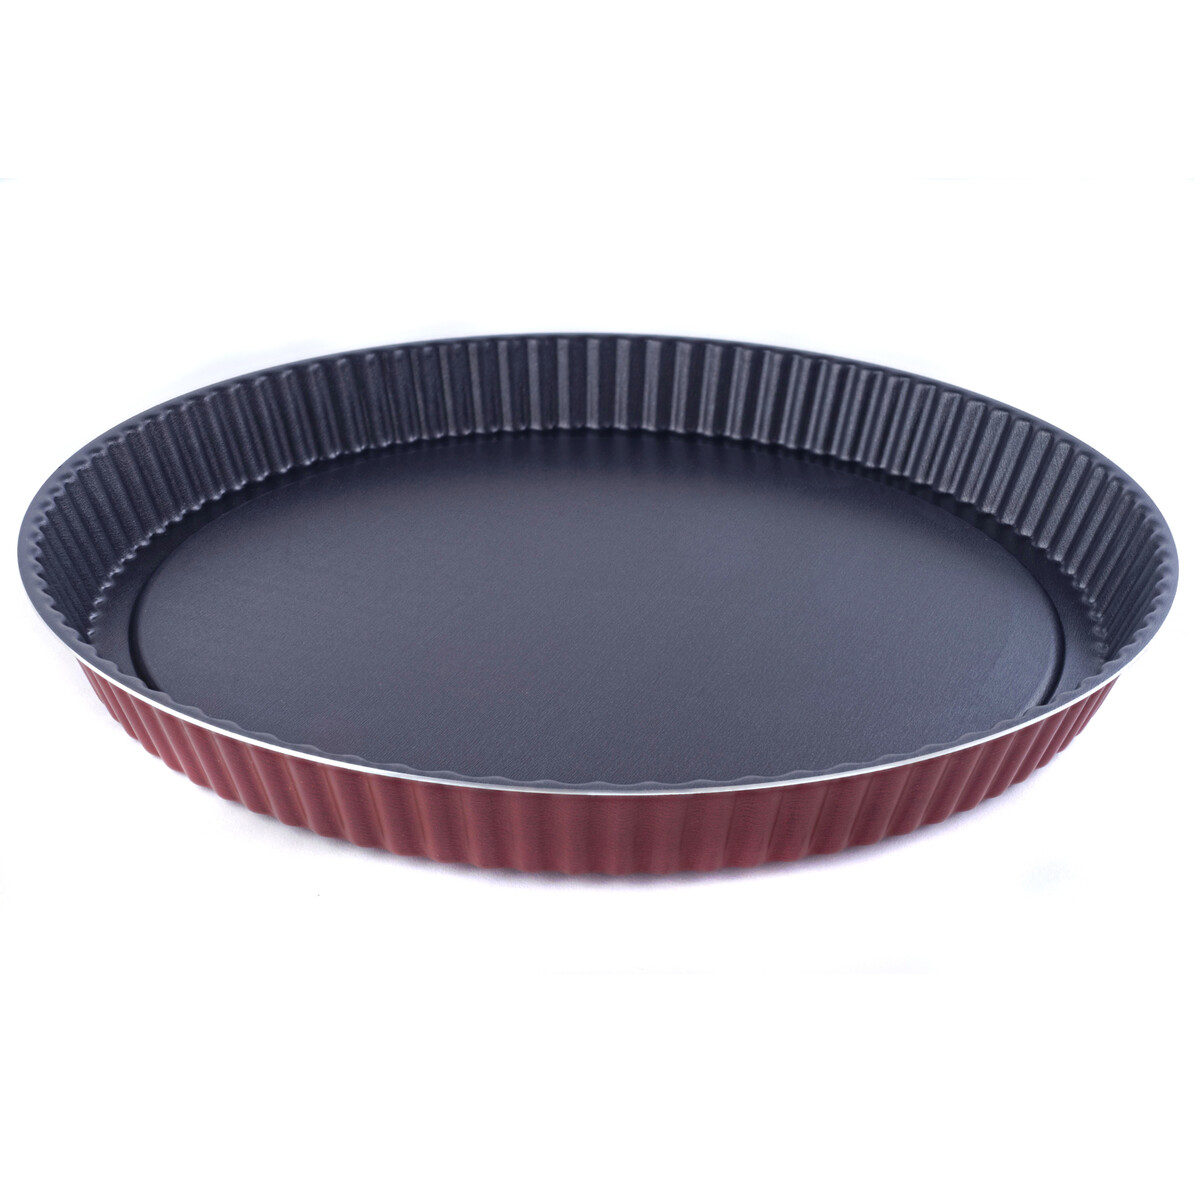 Форма круглая 28см для пирога забаватм форма для пирога стекло 27х27х3 см 1 3 л круглая с волнистым краем бес ная o cuisine 803bc00 1048